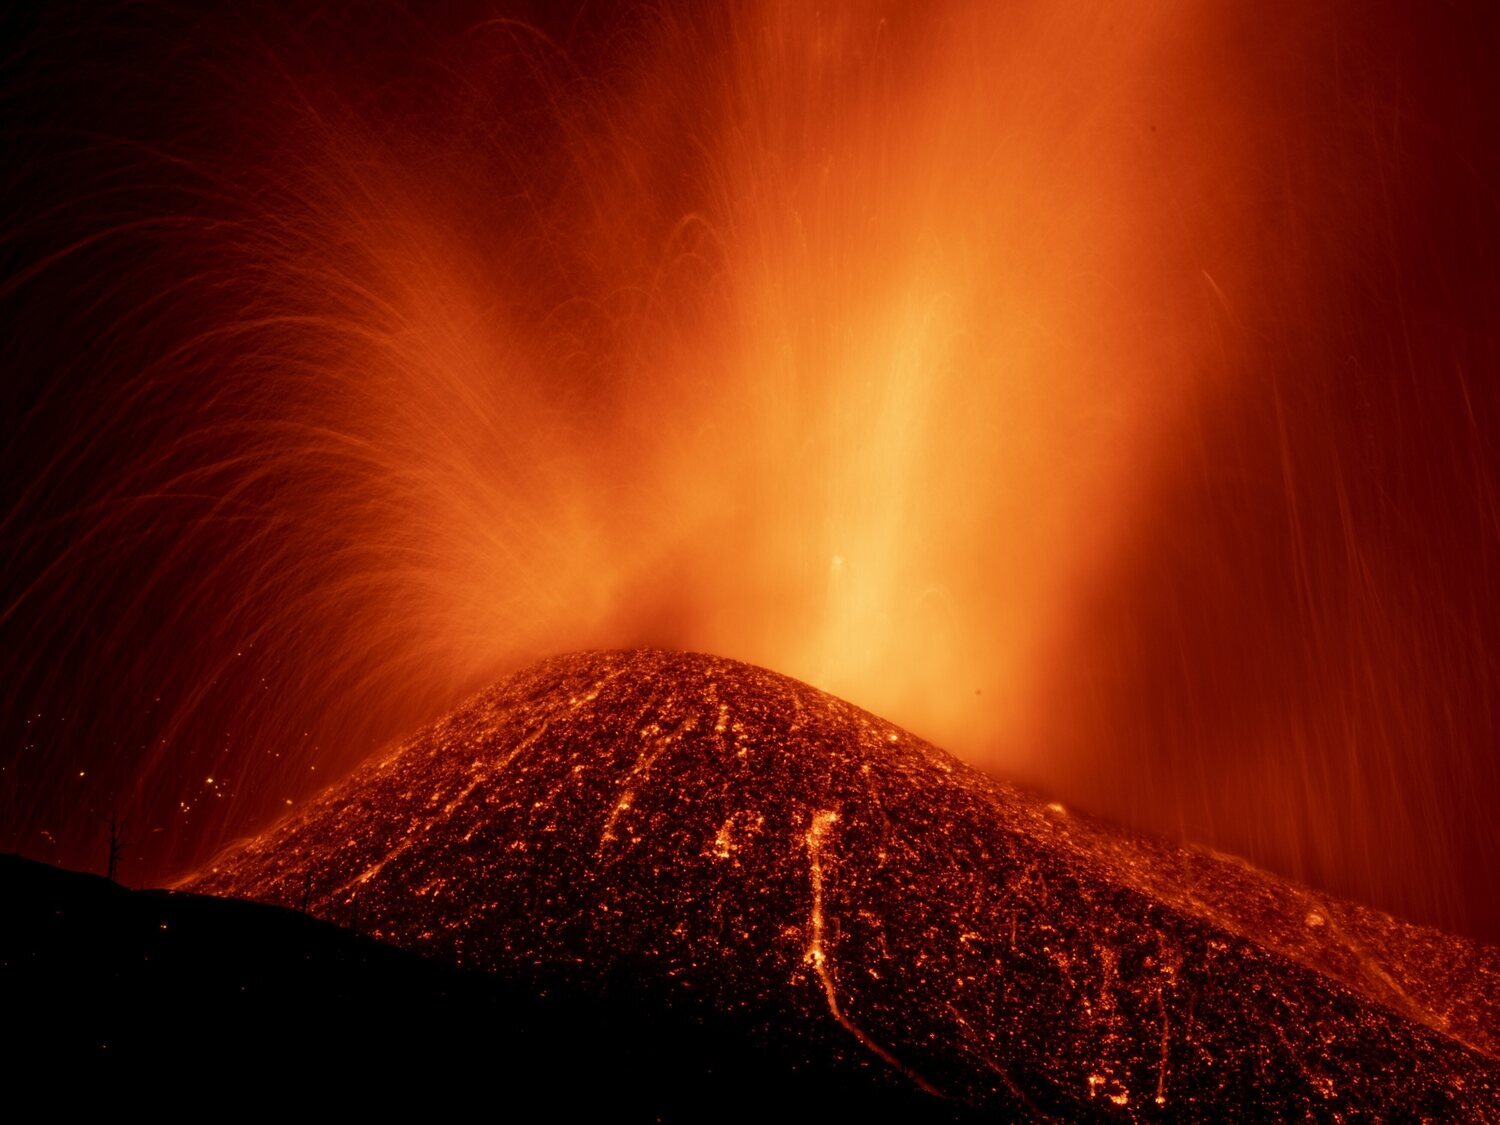 ¿Qué son las extrañas ondas que aparecen sobre el volcán de La Palma y cubren el cielo?